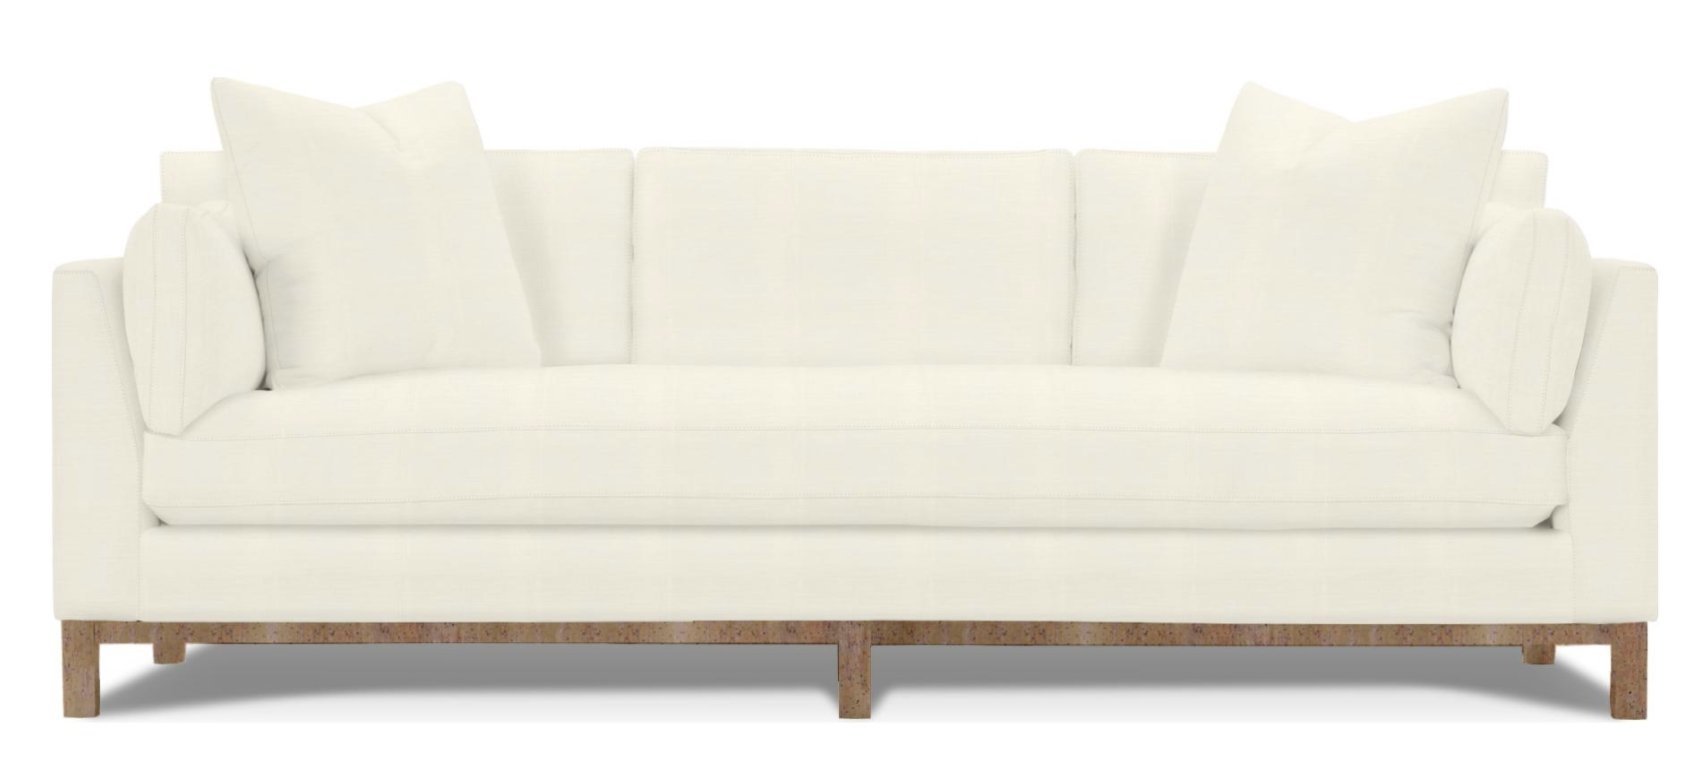 Huxley 99" Sofa, Bench Cushion, Beige & Washed Oak - Image 0